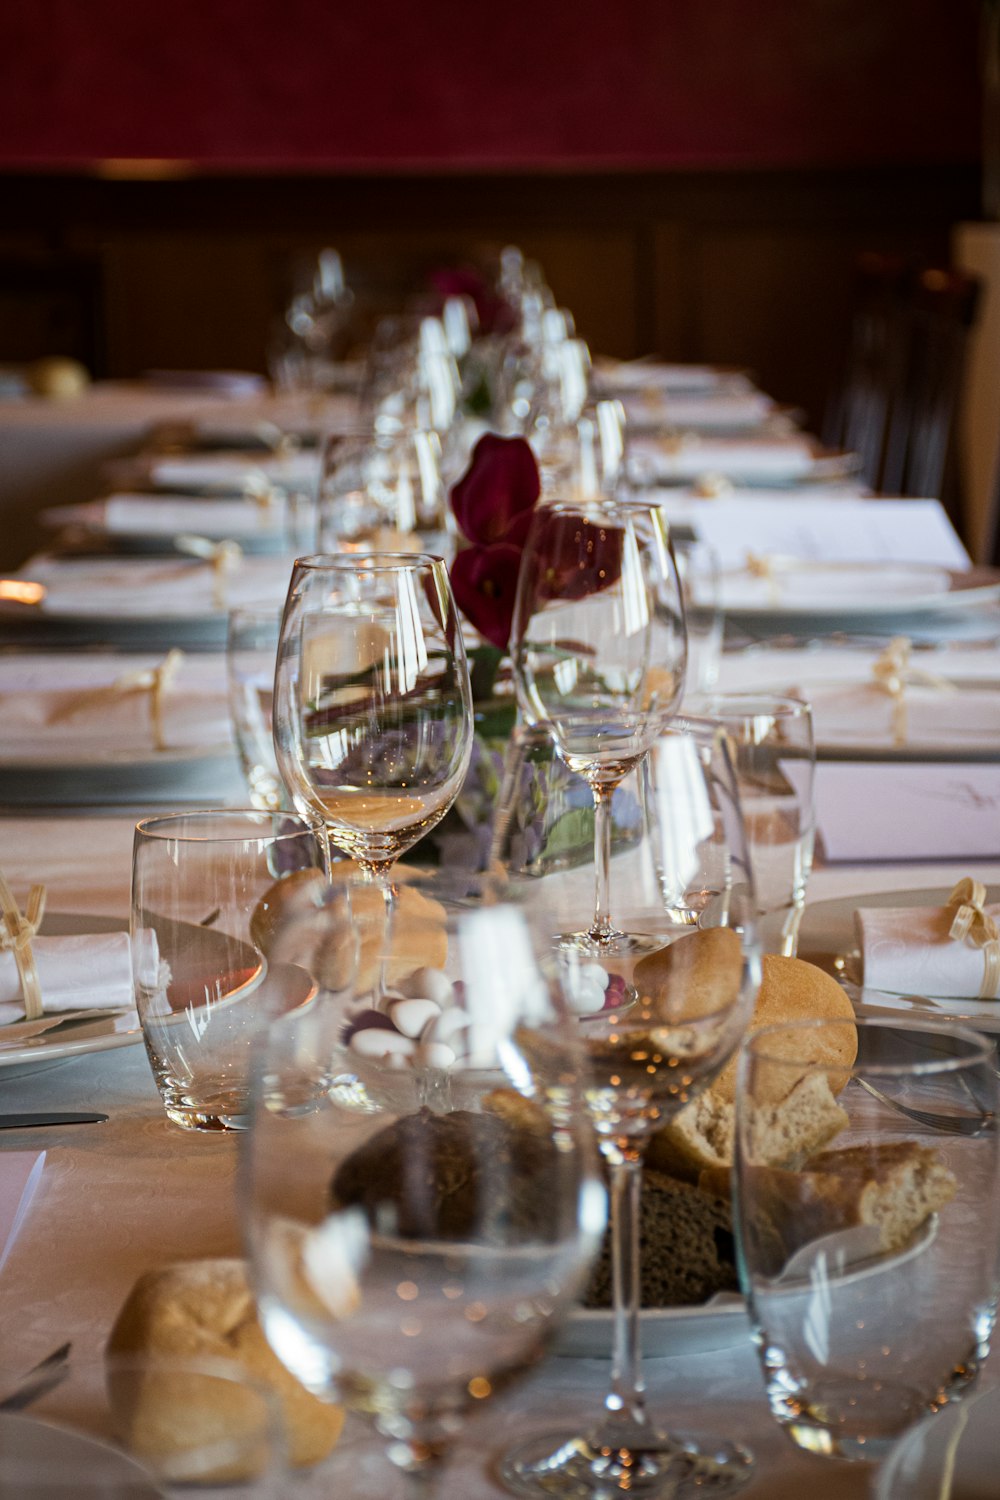 テーブルの上の透明なワイングラス